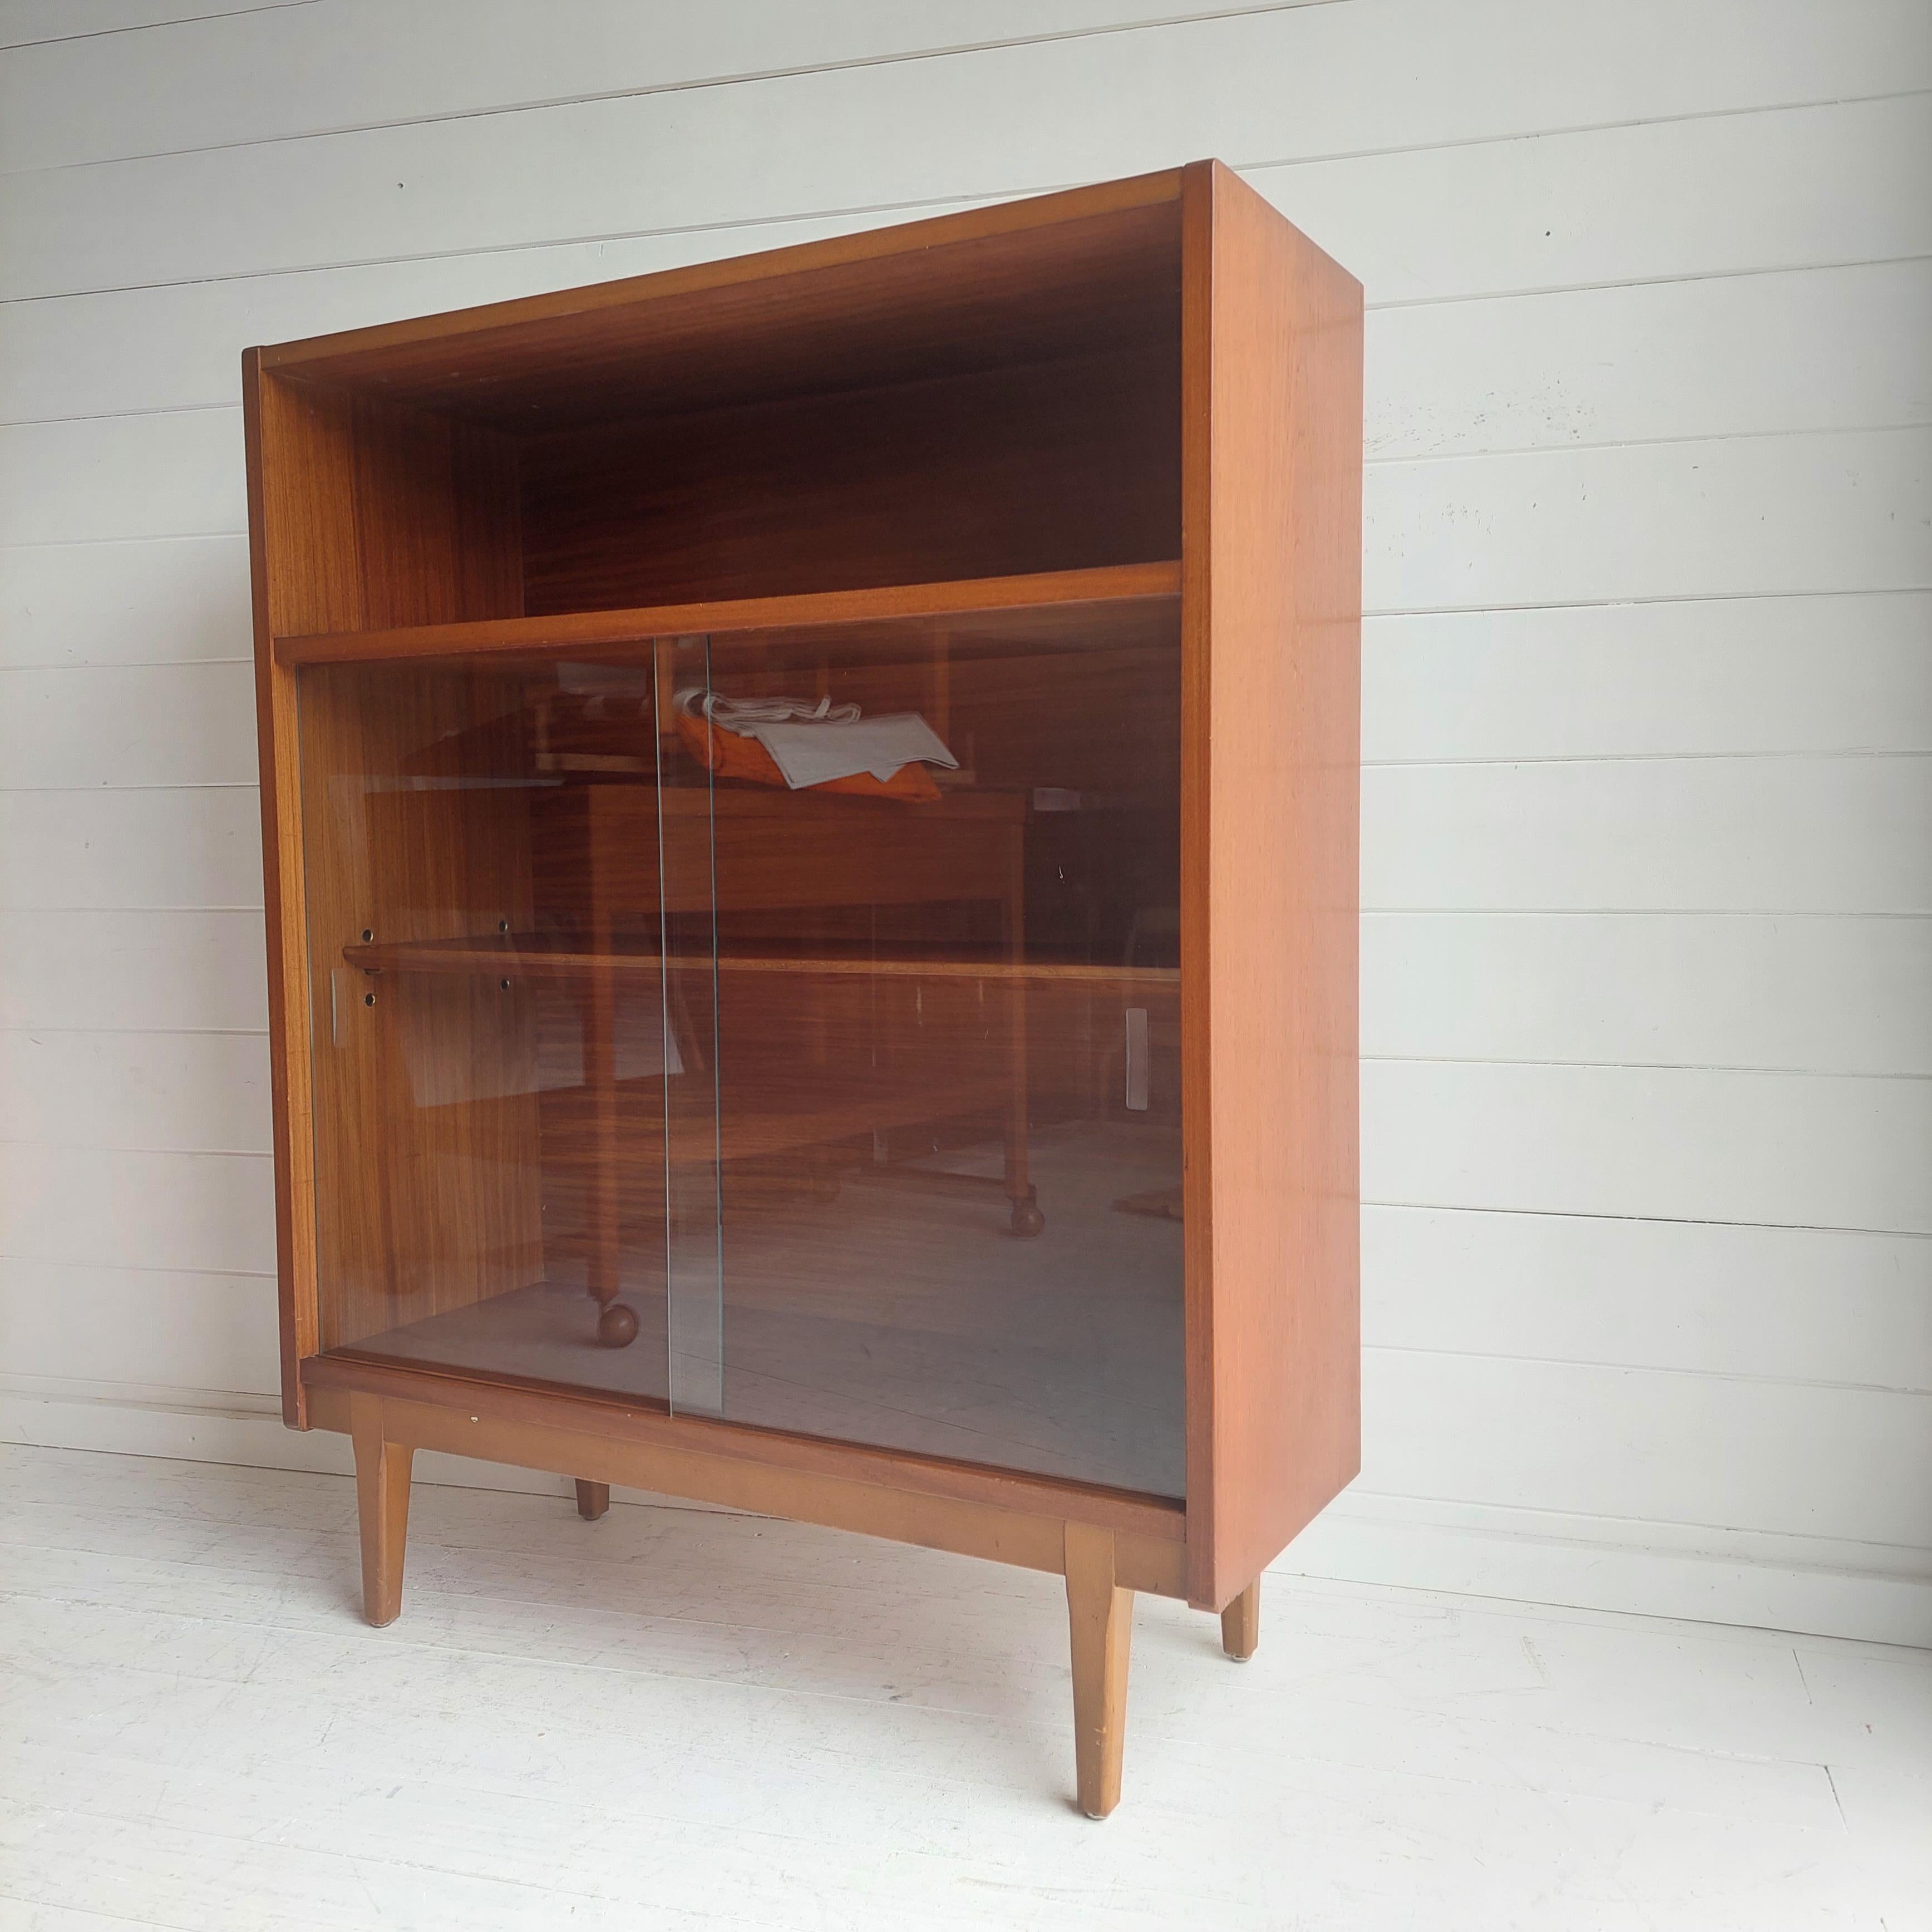 20th Century Midcentury Nathan Teak Glazed Bookcase Display Unit Cabinet Danish Style, 60s